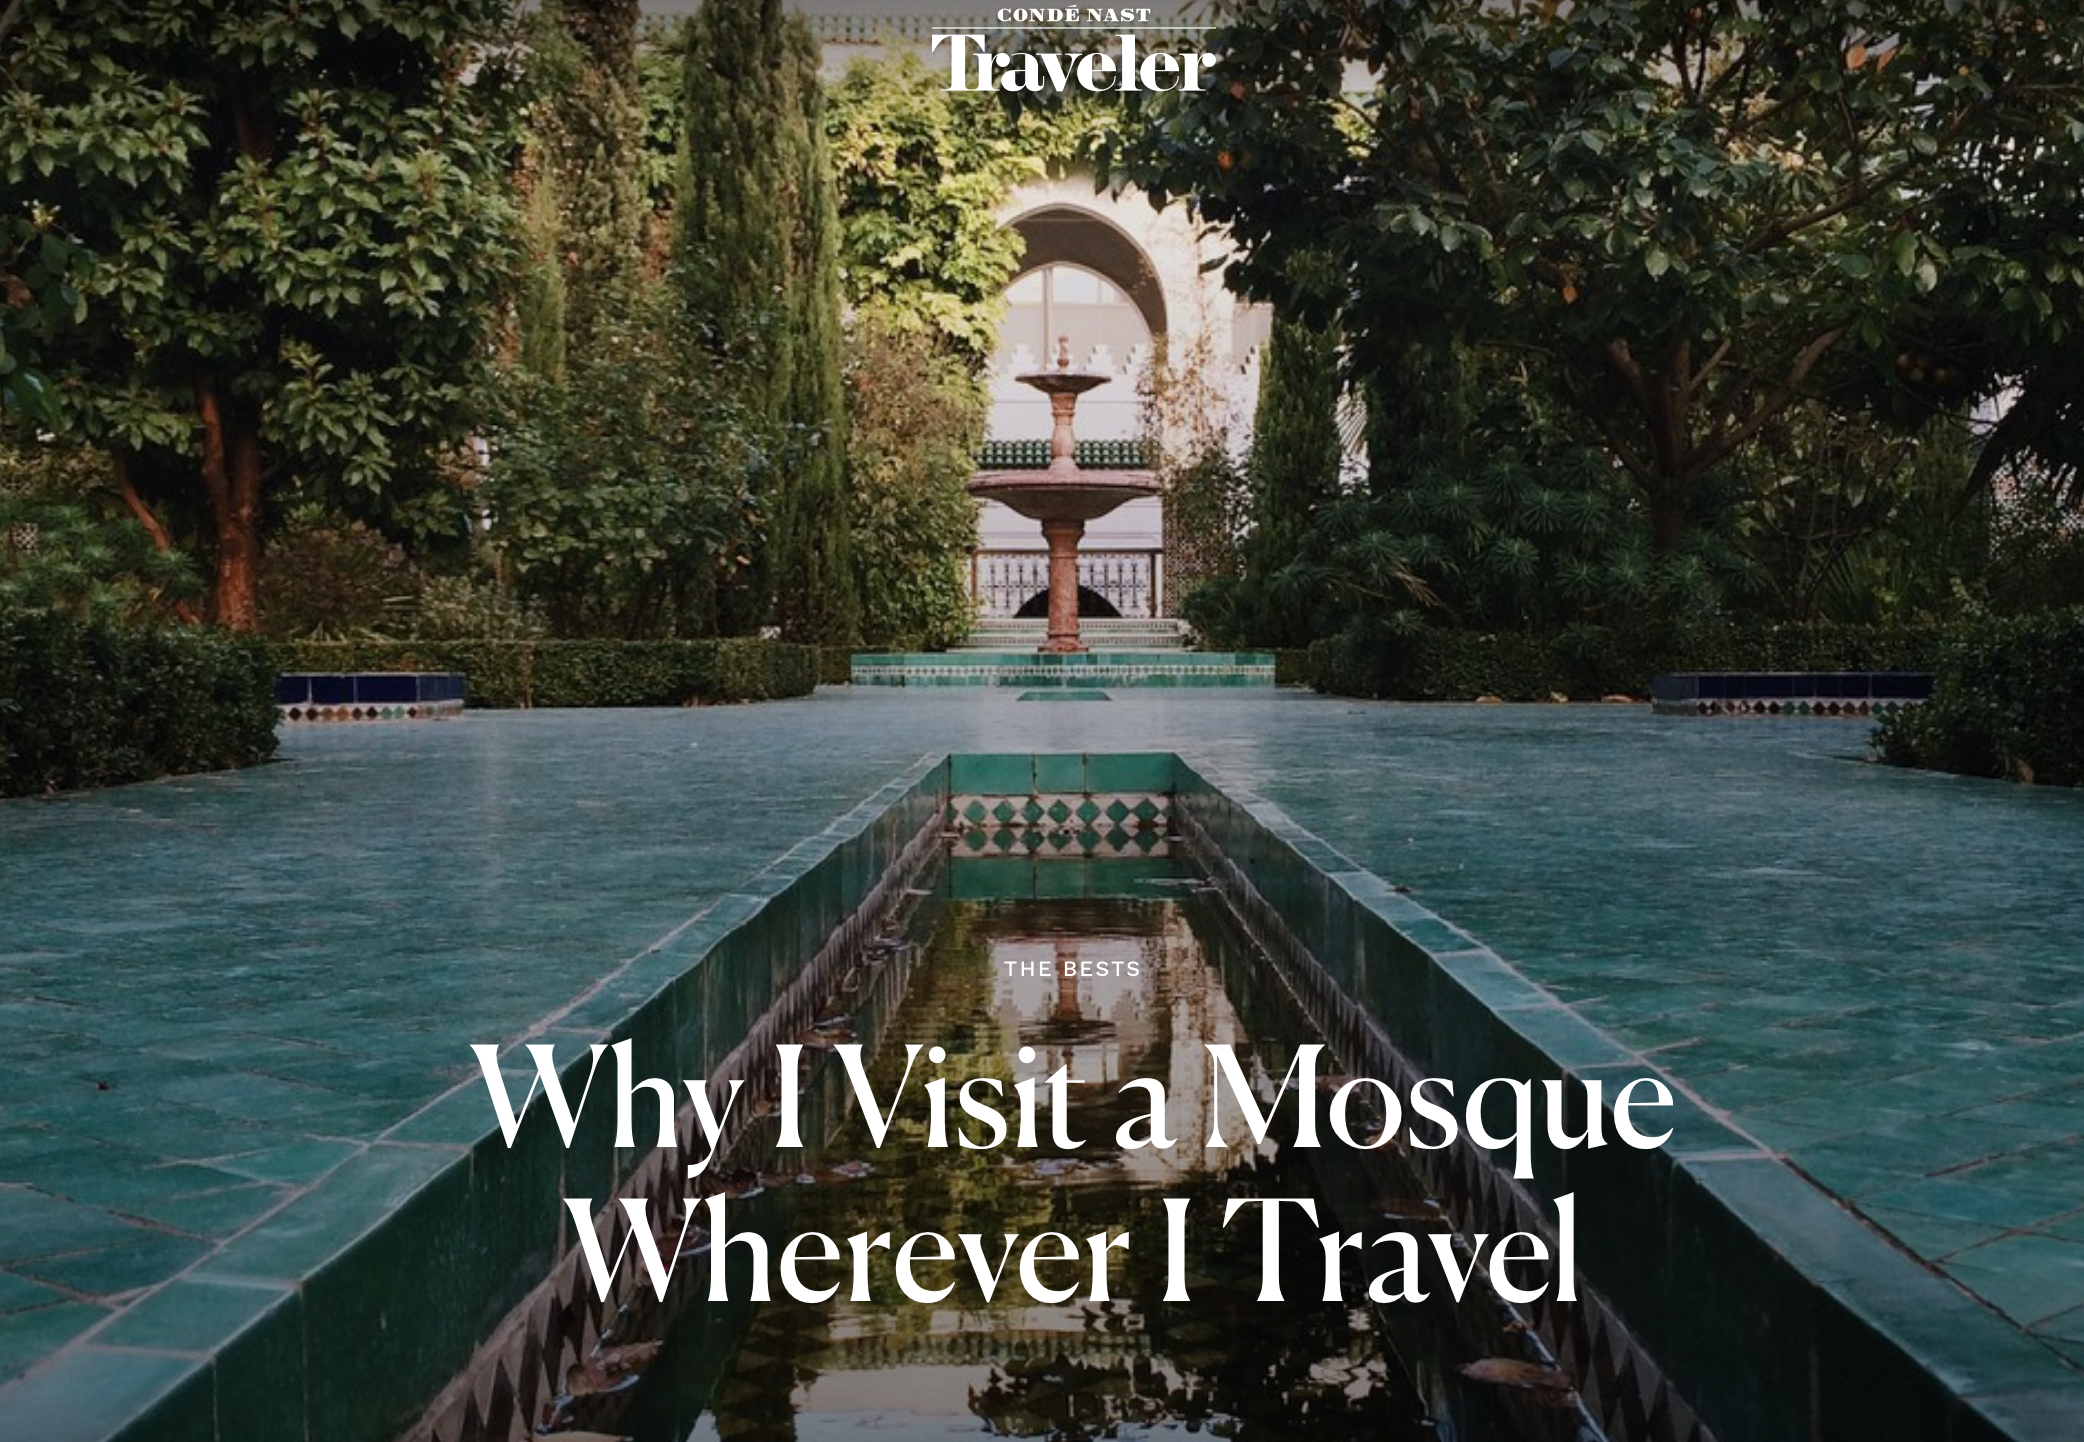 Condé Nast Traveler: Why I Visit a Mosque Wherever I Travel